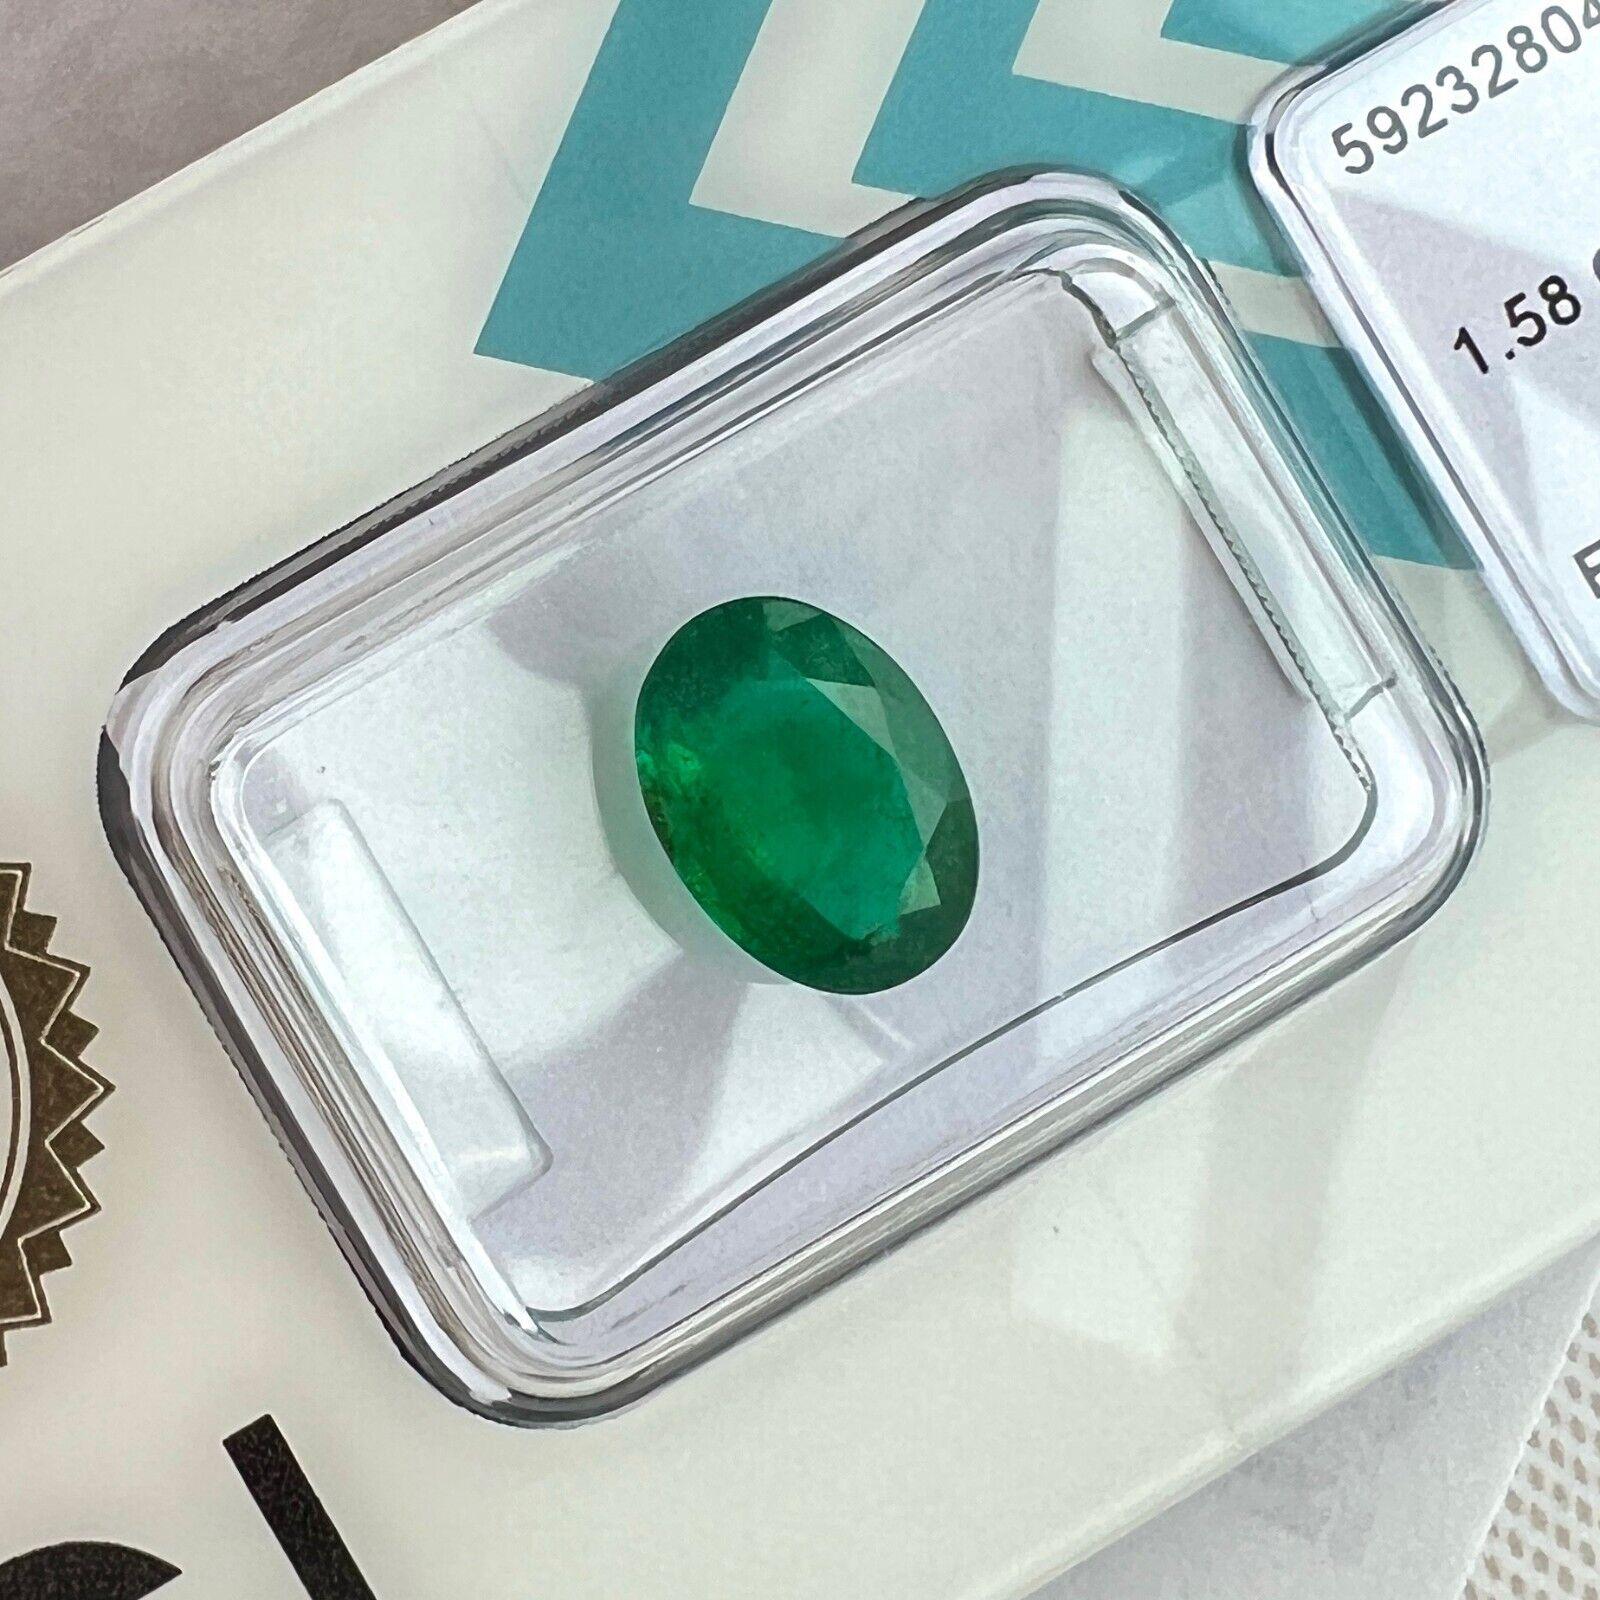 IGI-zertifizierter 1,58ct natürlicher tiefgrüner Smaragd im Ovalschliff Loser Edelstein

GIA zertifiziert natürlichen grünen Sambia Smaragd Edelstein.
1,58 Karat Smaragd mit einer feinen tiefgrünen Farbe und guter Reinheit. Sauberer Stein mit nur